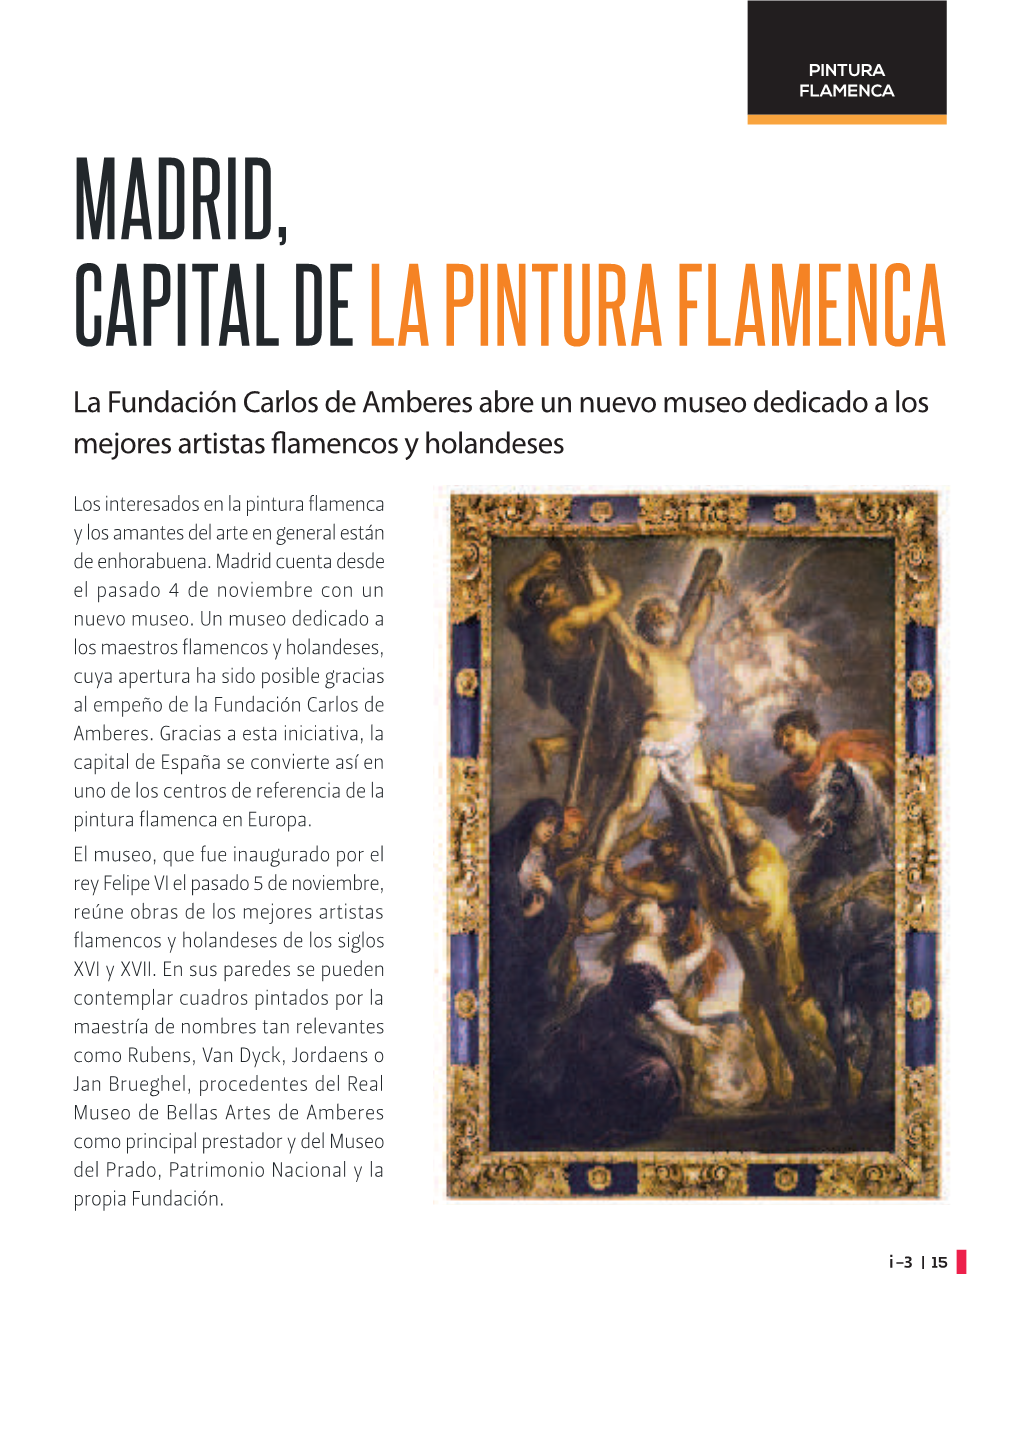 MADRID, CAPITAL DE LA PINTURA FLAMENCA La Fundación Carlos De Amberes Abre Un Nuevo Museo Dedicado a Los Mejores Artistas % Amencos Y Holandeses